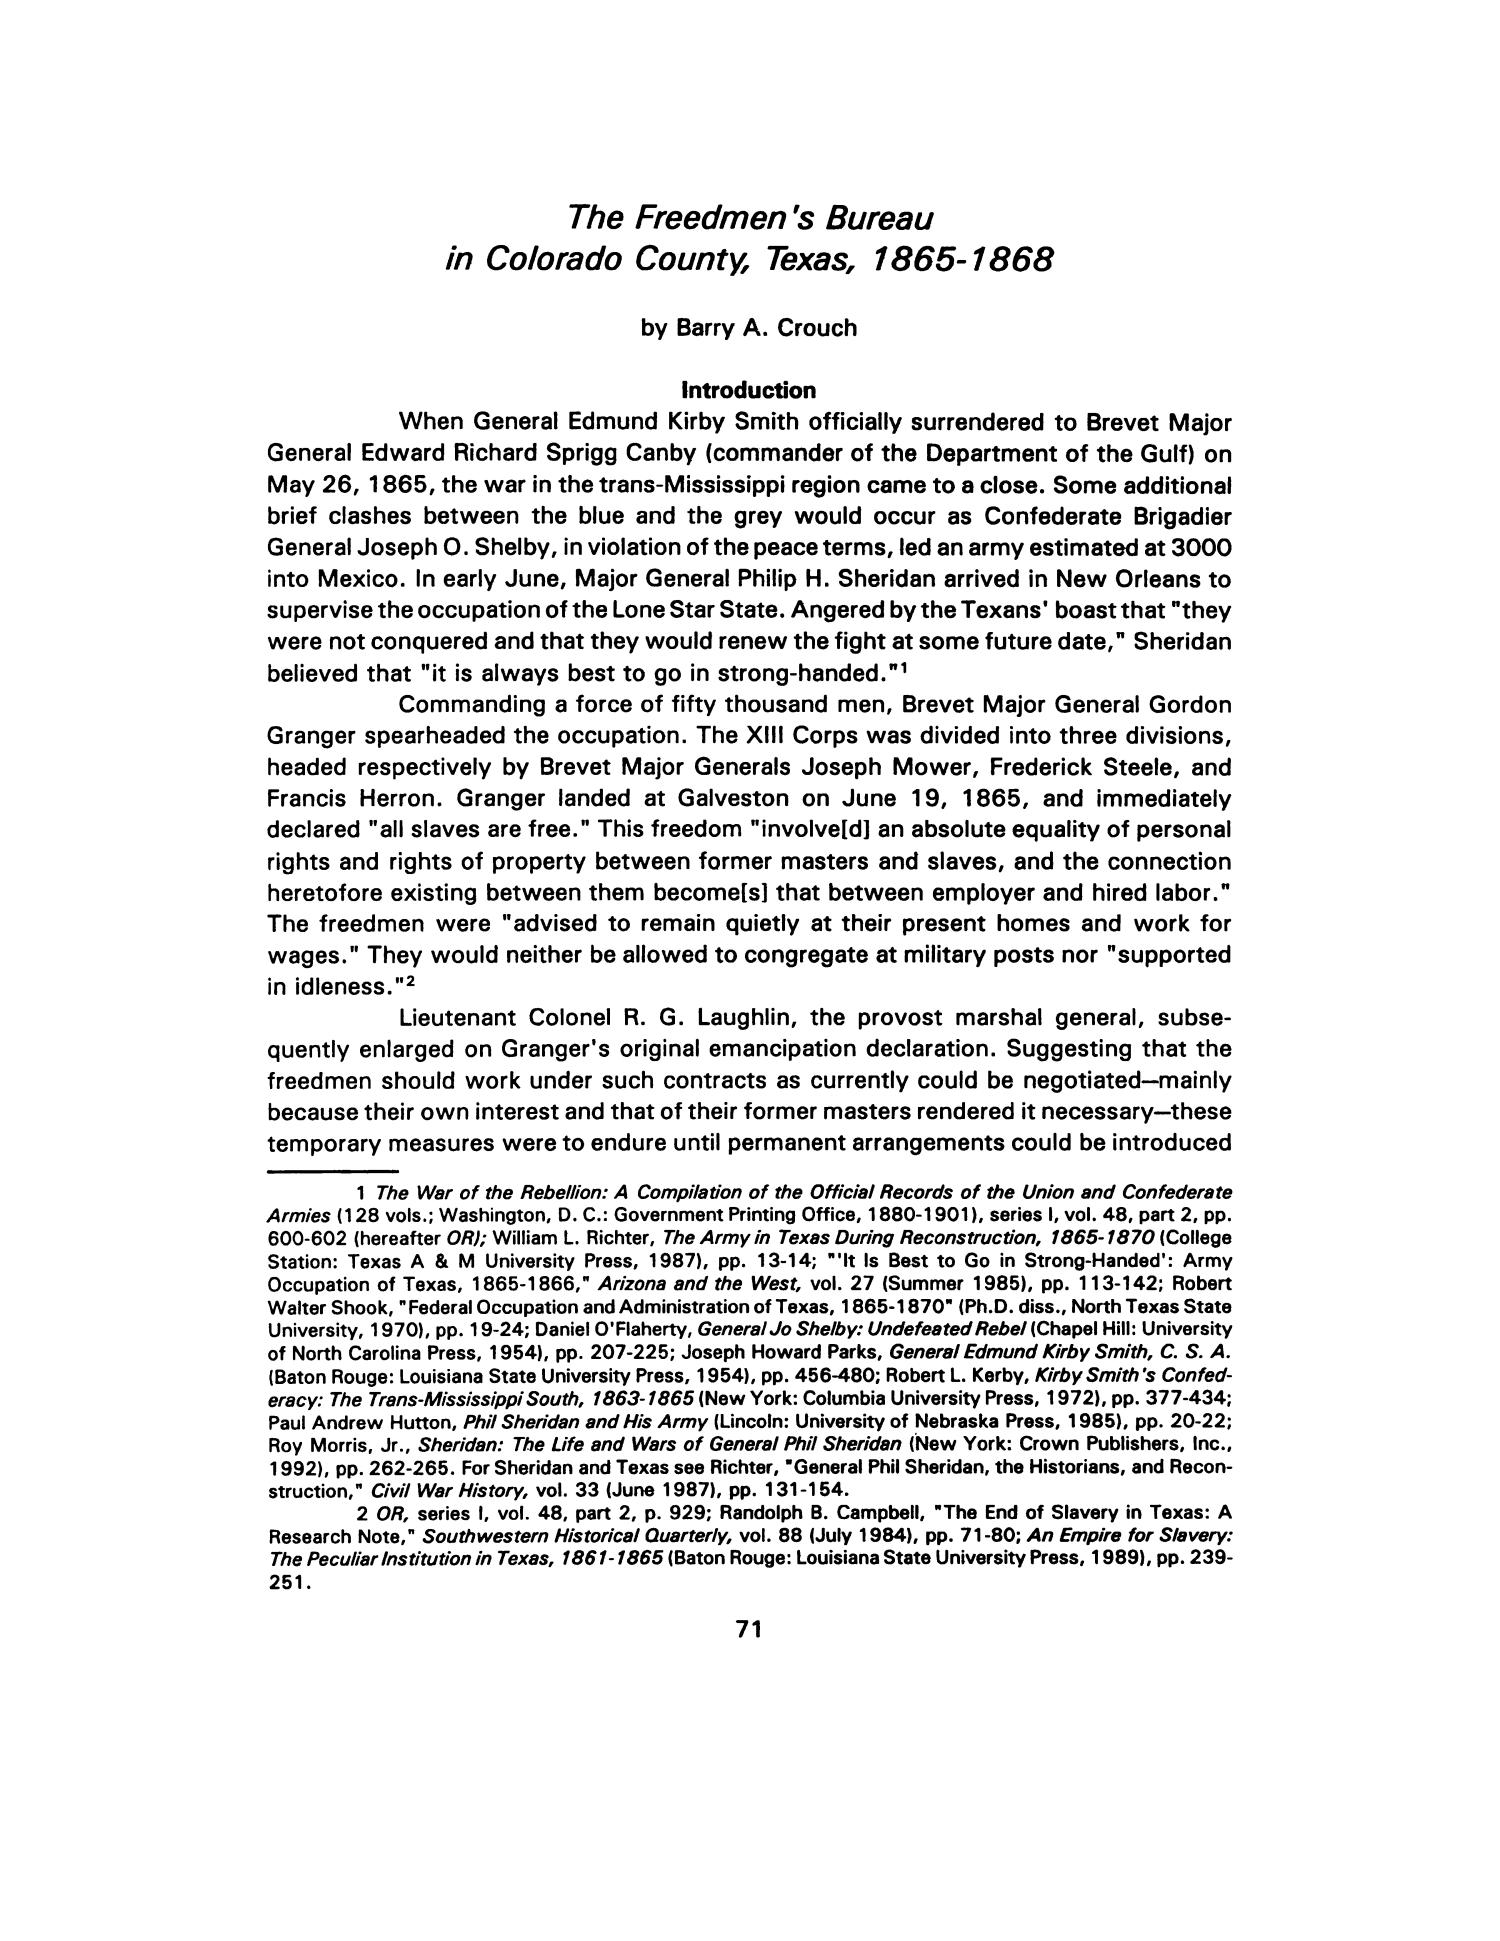 Nesbitt Memorial Library Journal, Volume 5, Number 2, May 1995
                                                
                                                    71
                                                